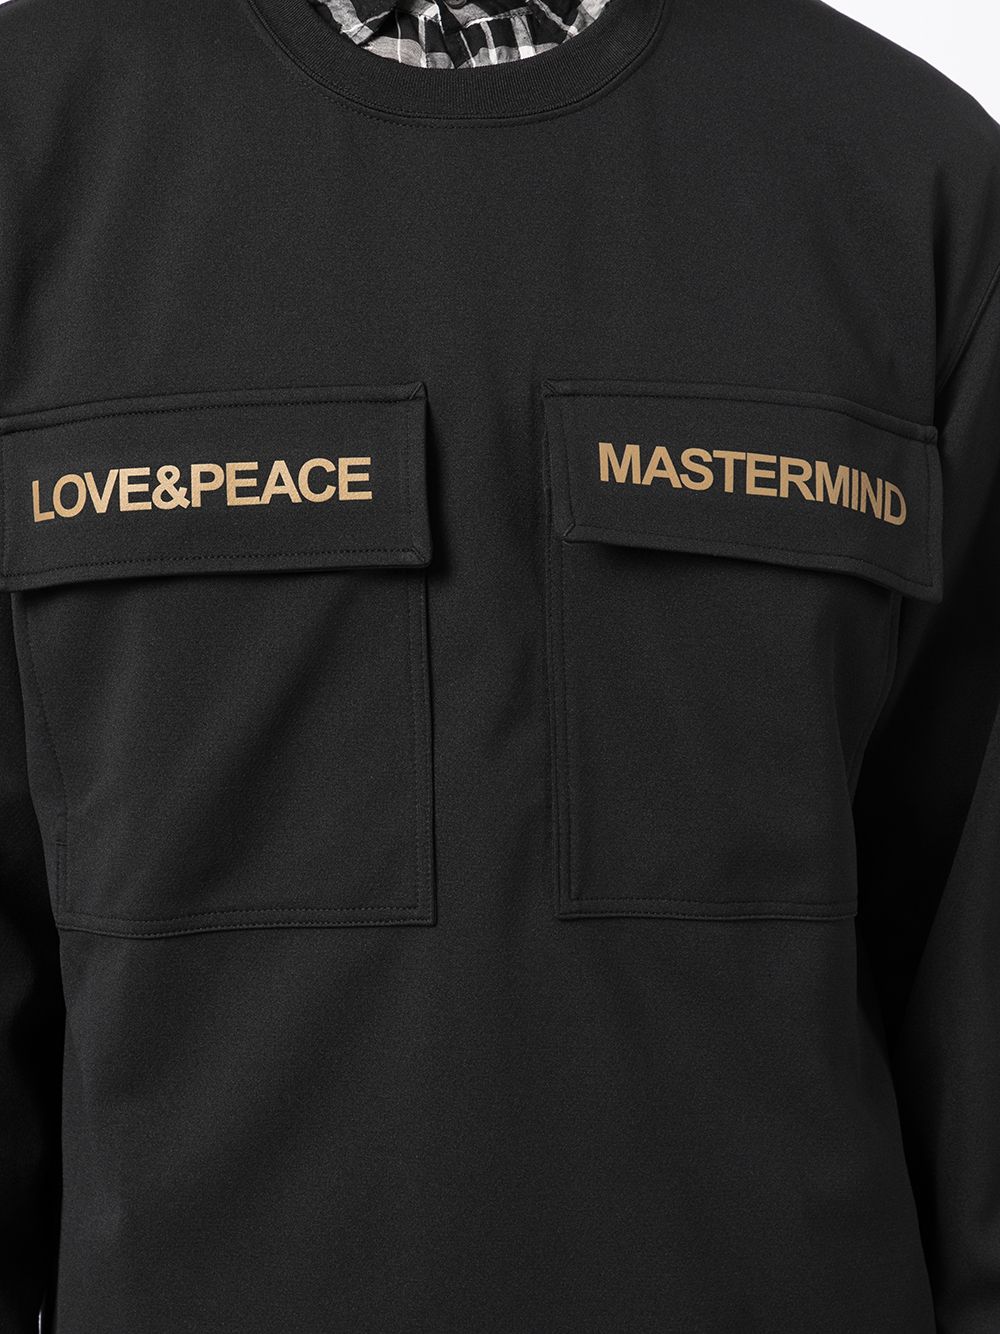 фото Mastermind world топ с длинными рукавами и карманами